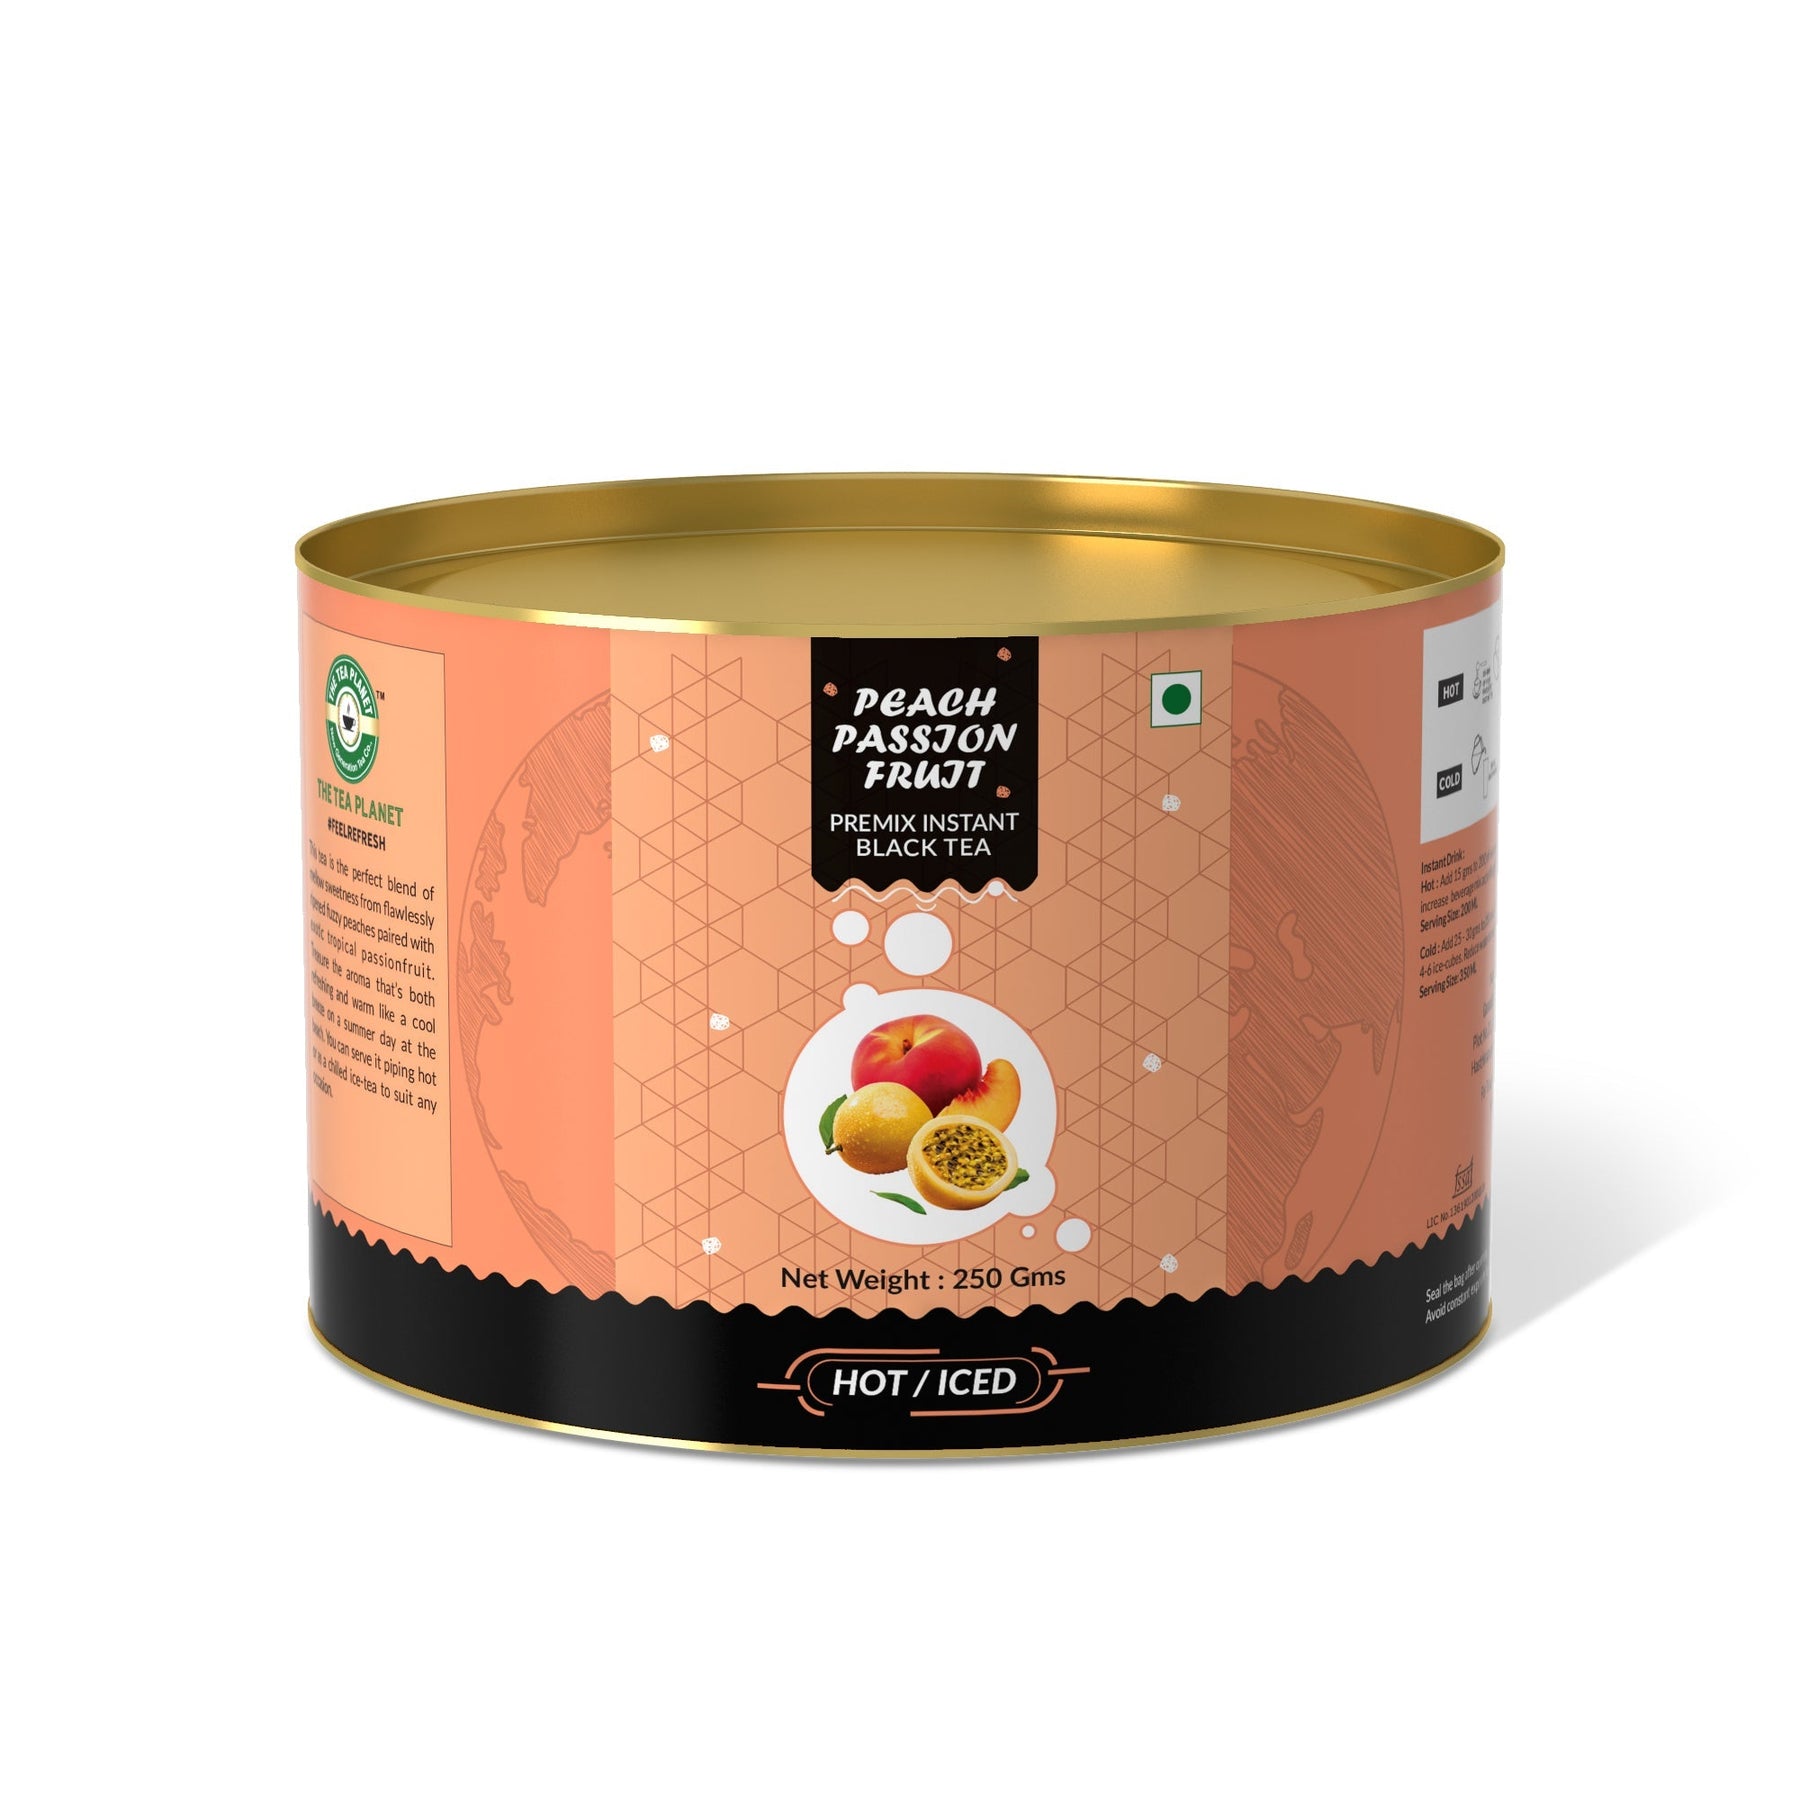 Peach & Passion Fruit Flavored Instant Black Tea - 400 gms